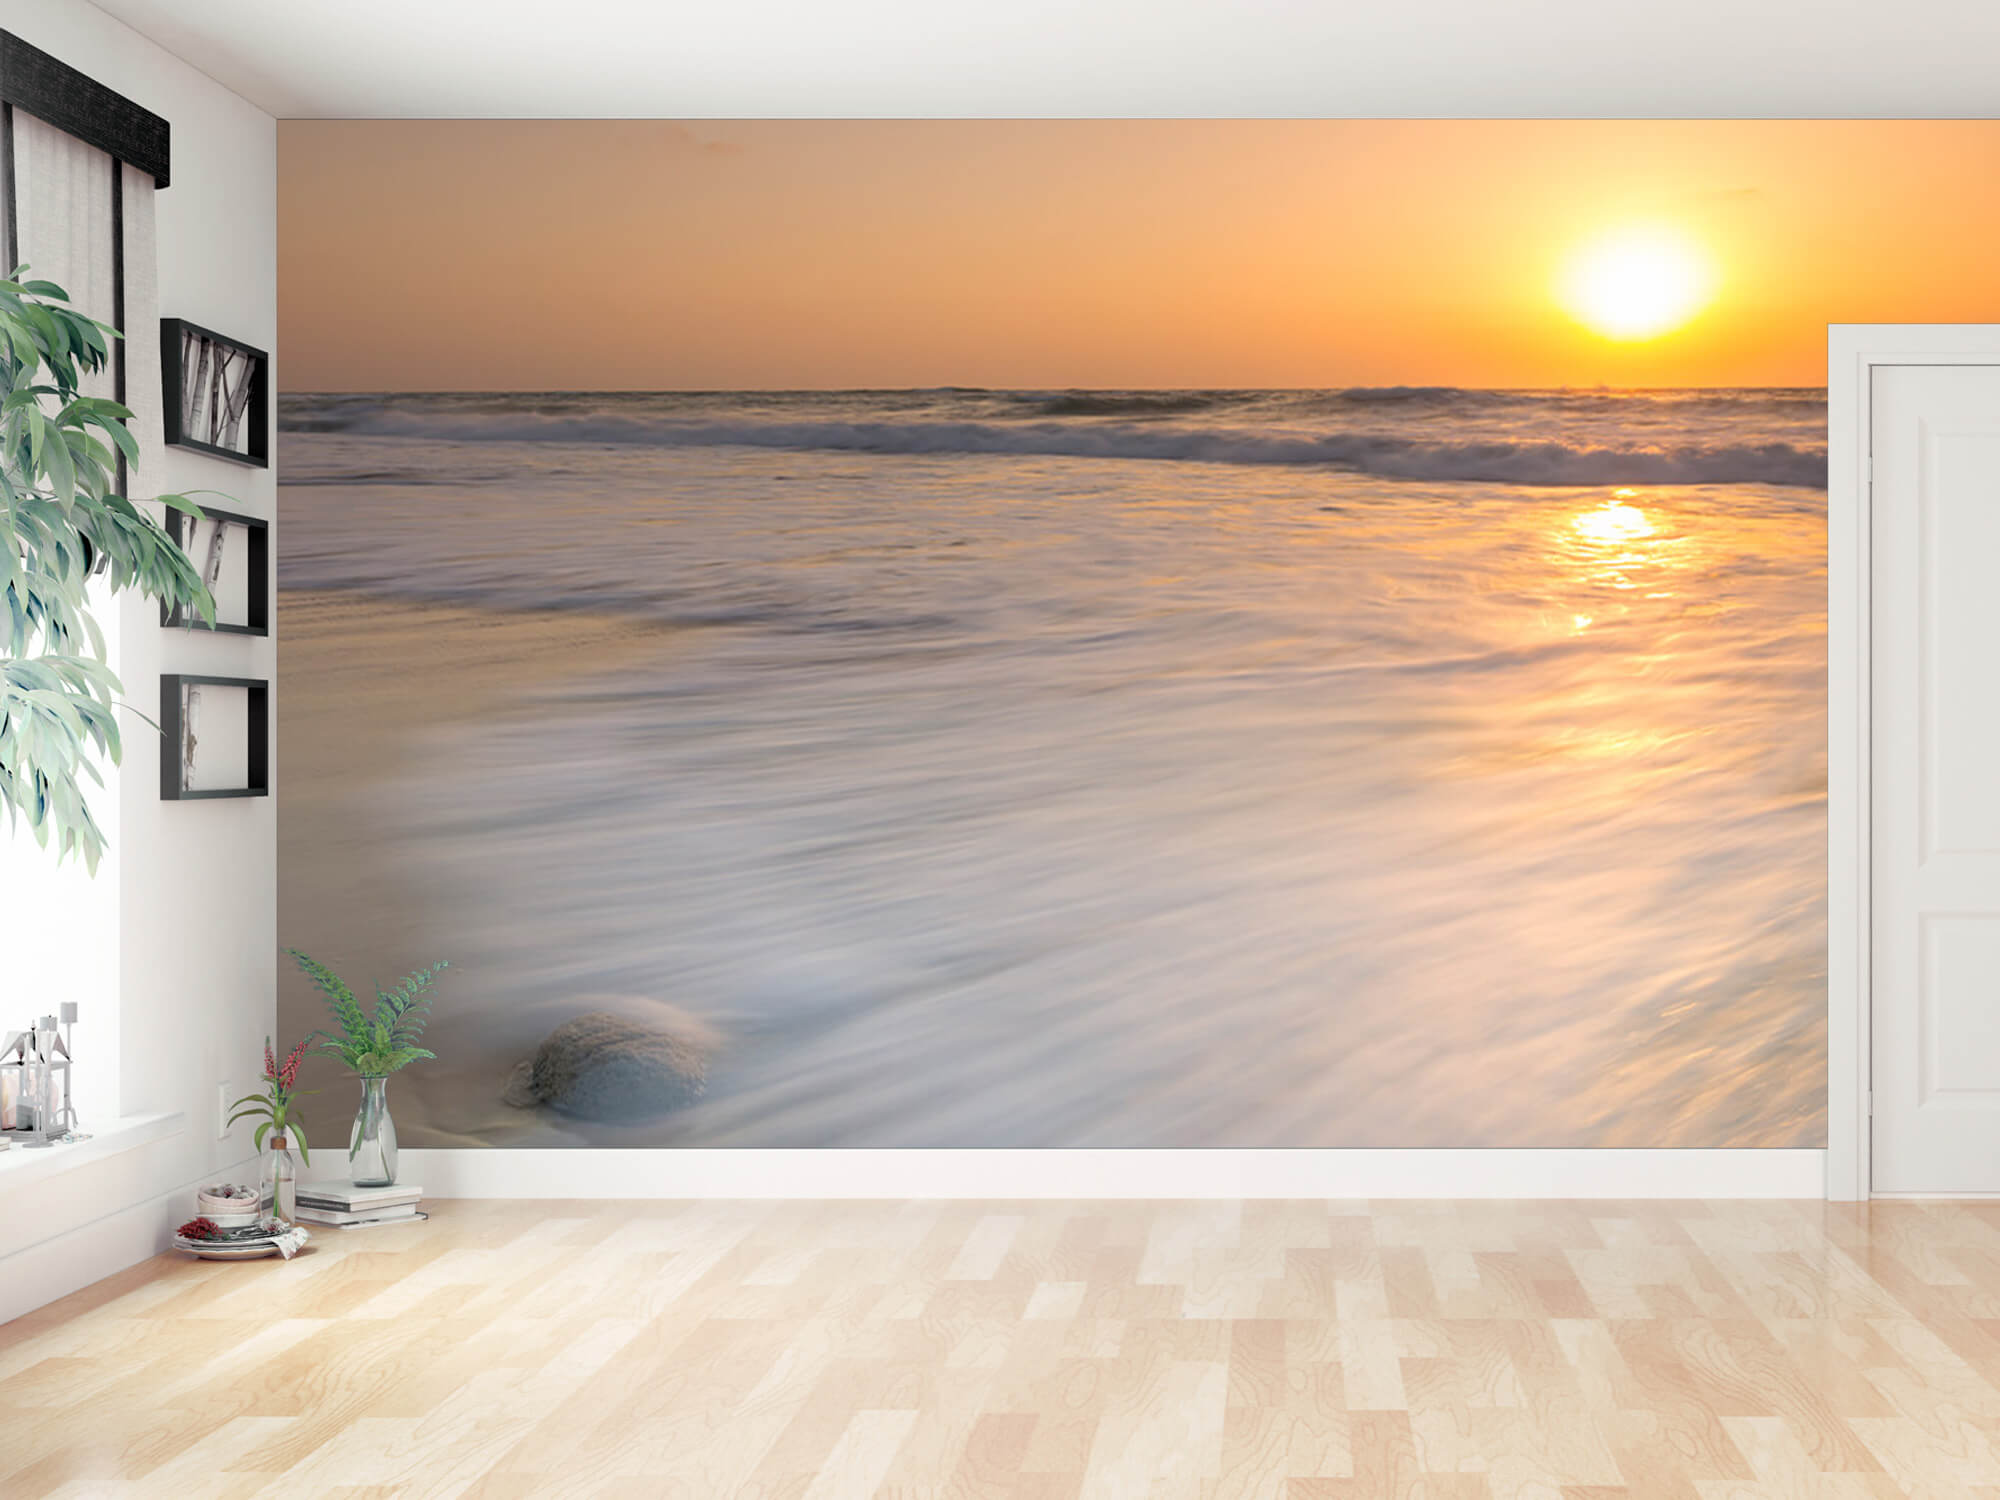  Papel pintado con Puesta de sol en la playa - Habitación 8